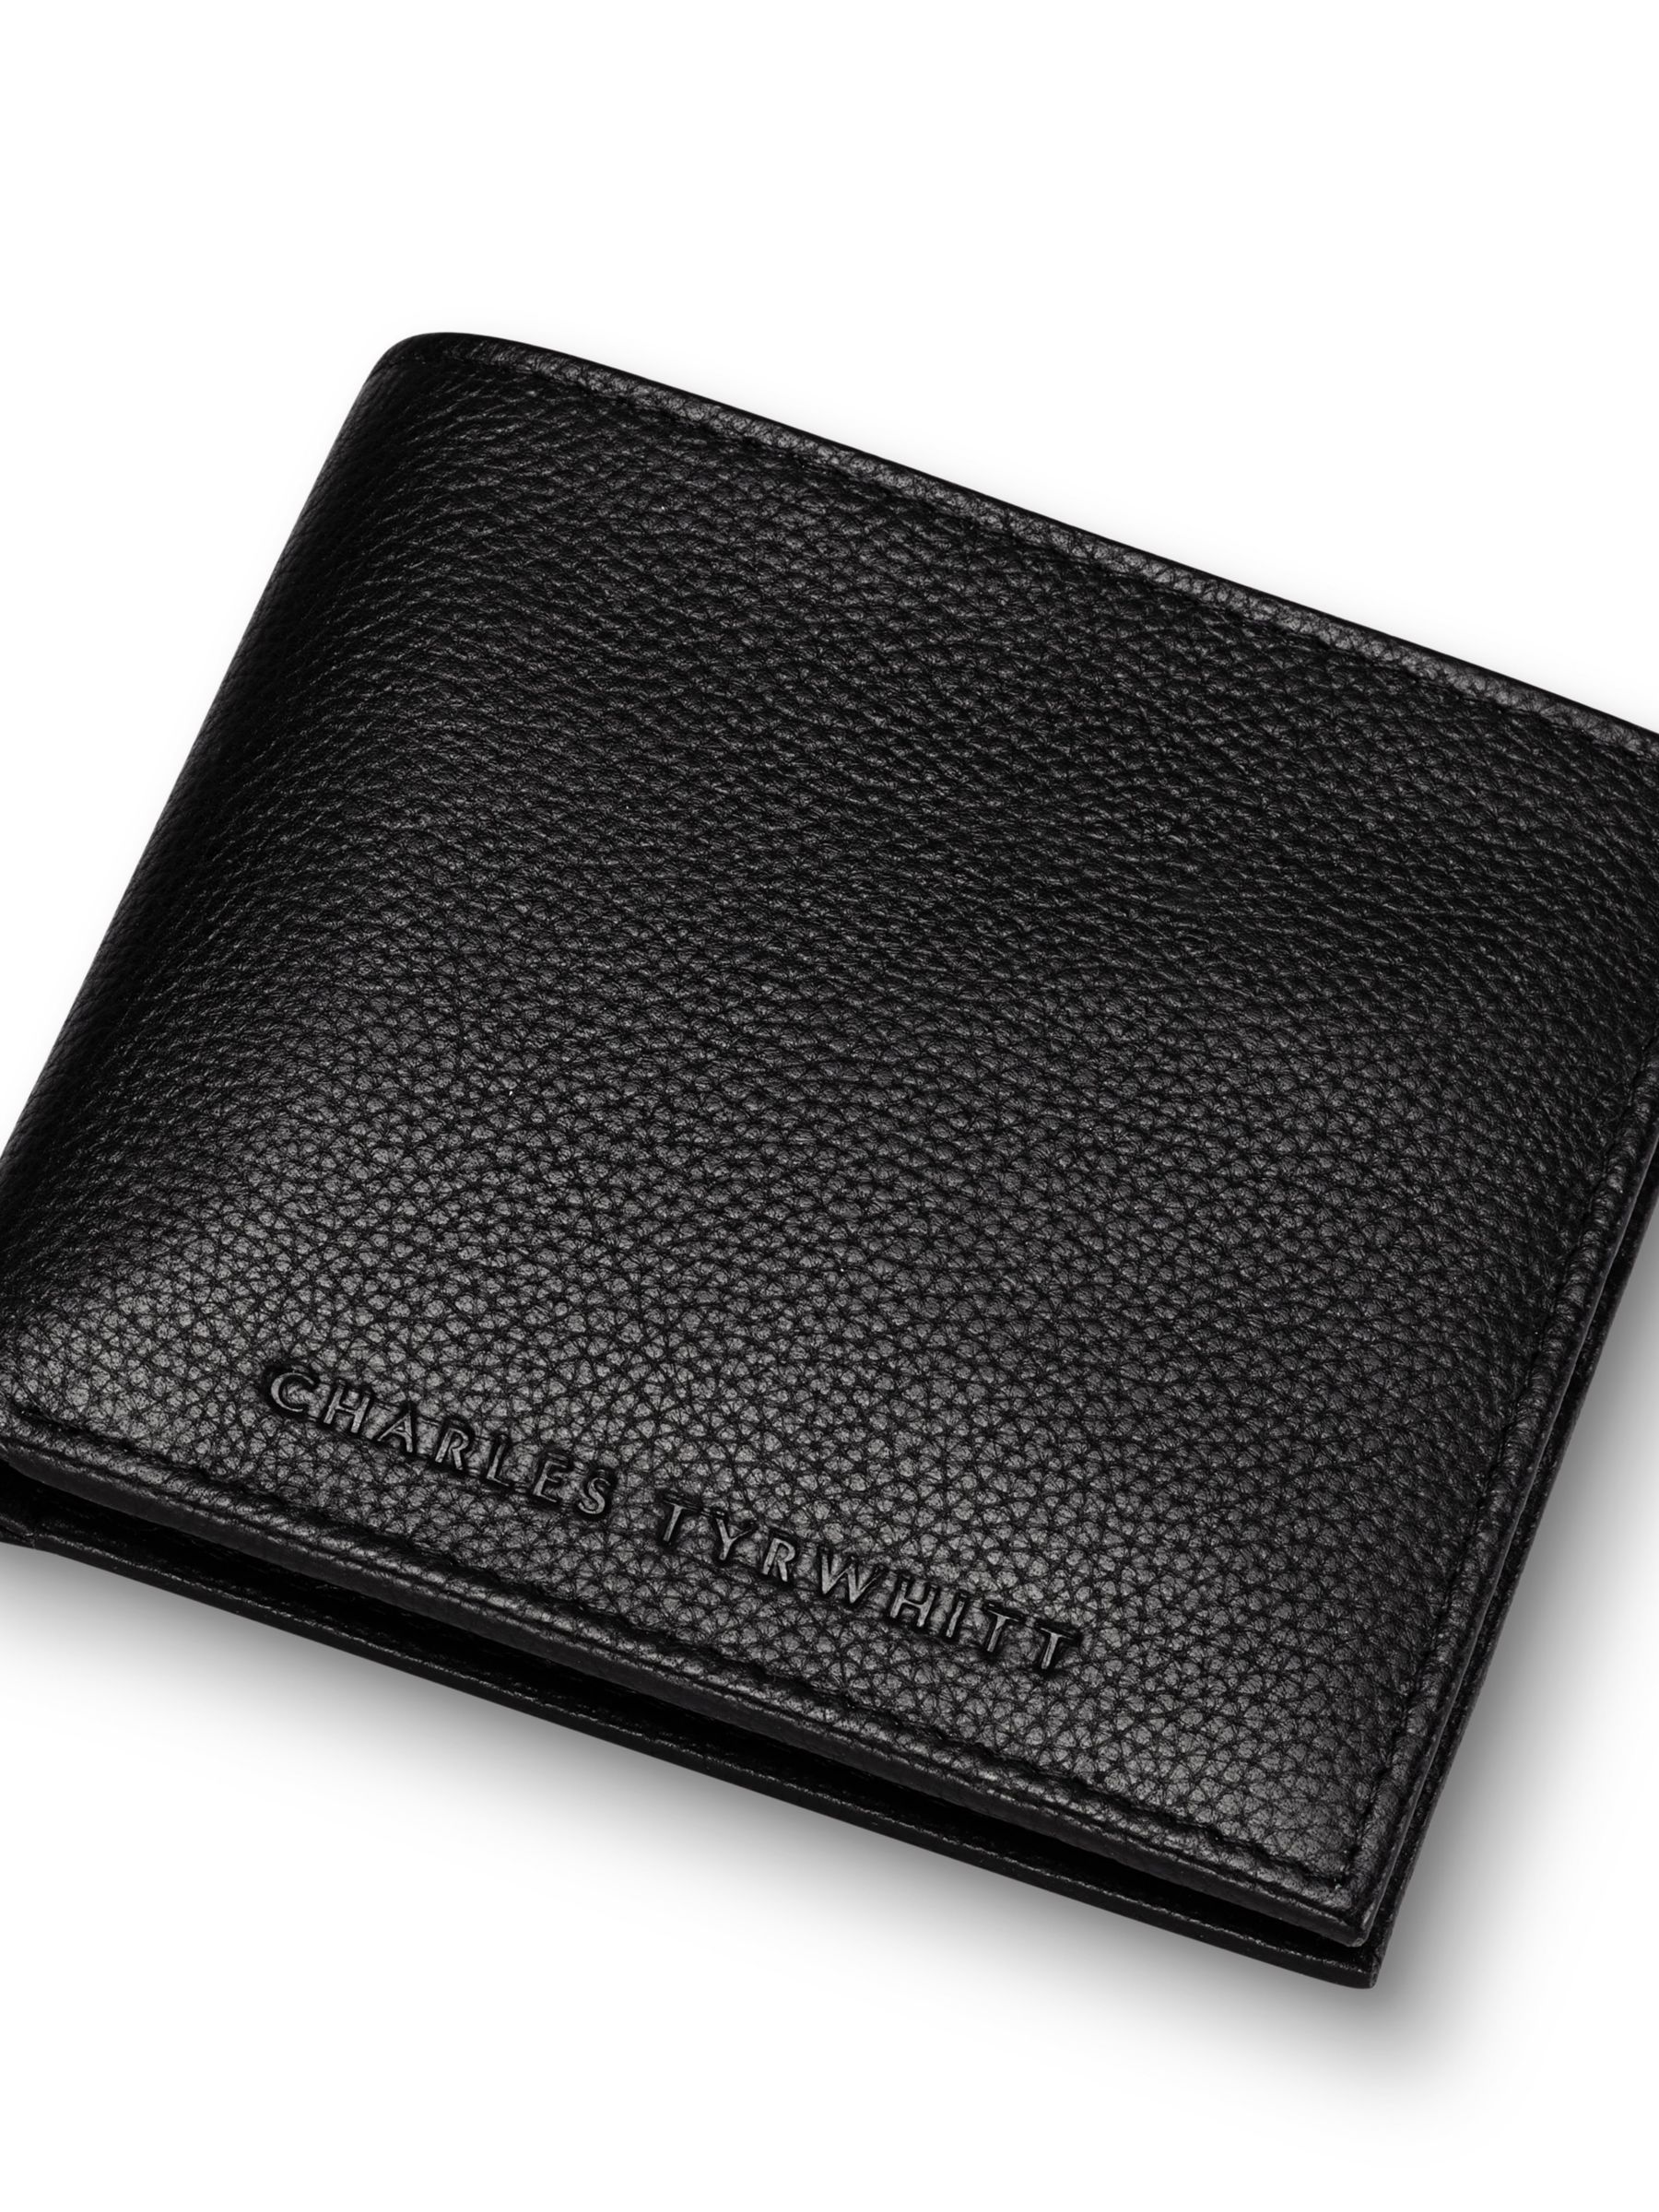 Charles Tyrwhitt Leather Bi-Fold Wallet, Black